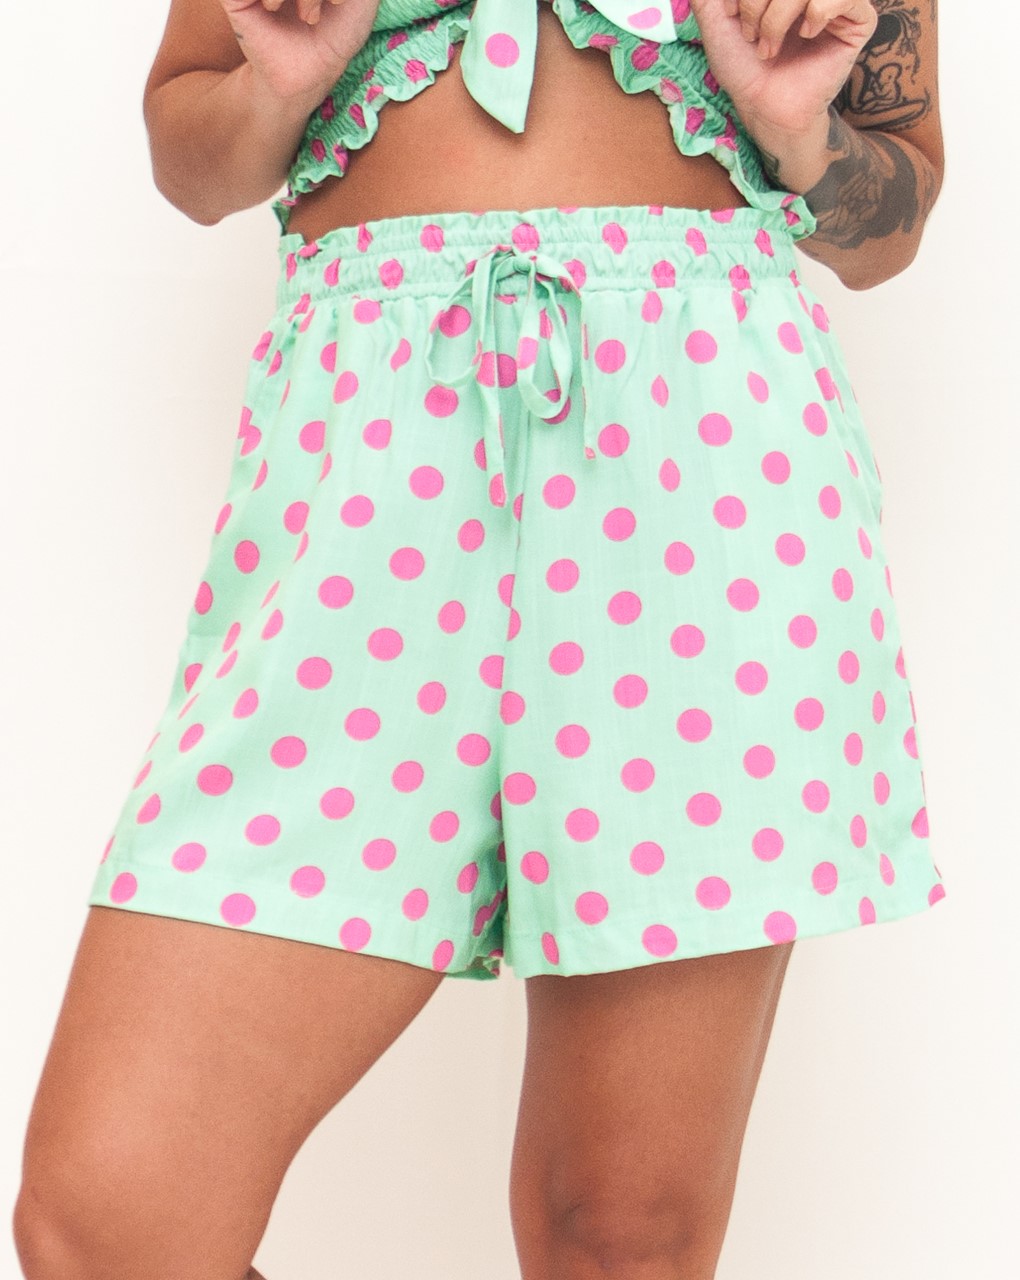 Short Pijama Comprido Verde com Bolas Rosas